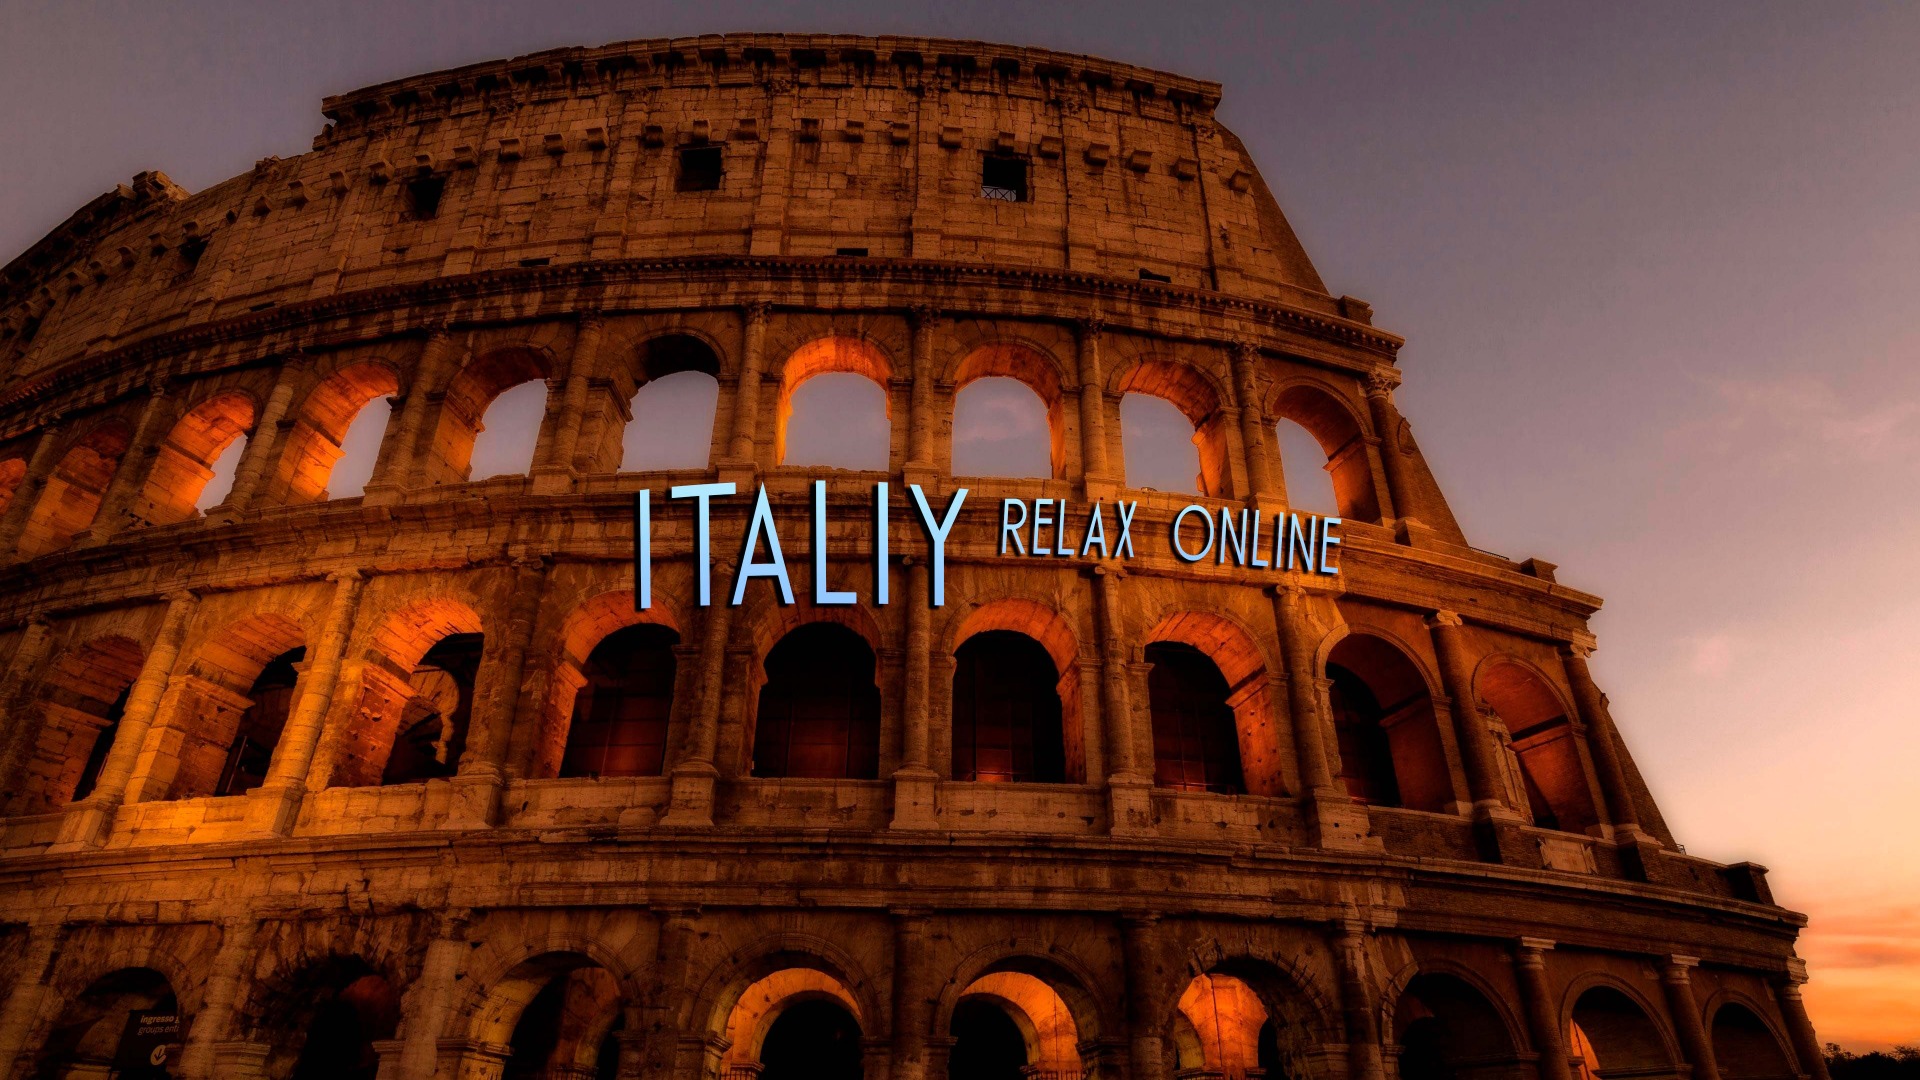 Италия  ее история и просторы. Релакс музыка, медитация онлайн. Путешествие по Италии